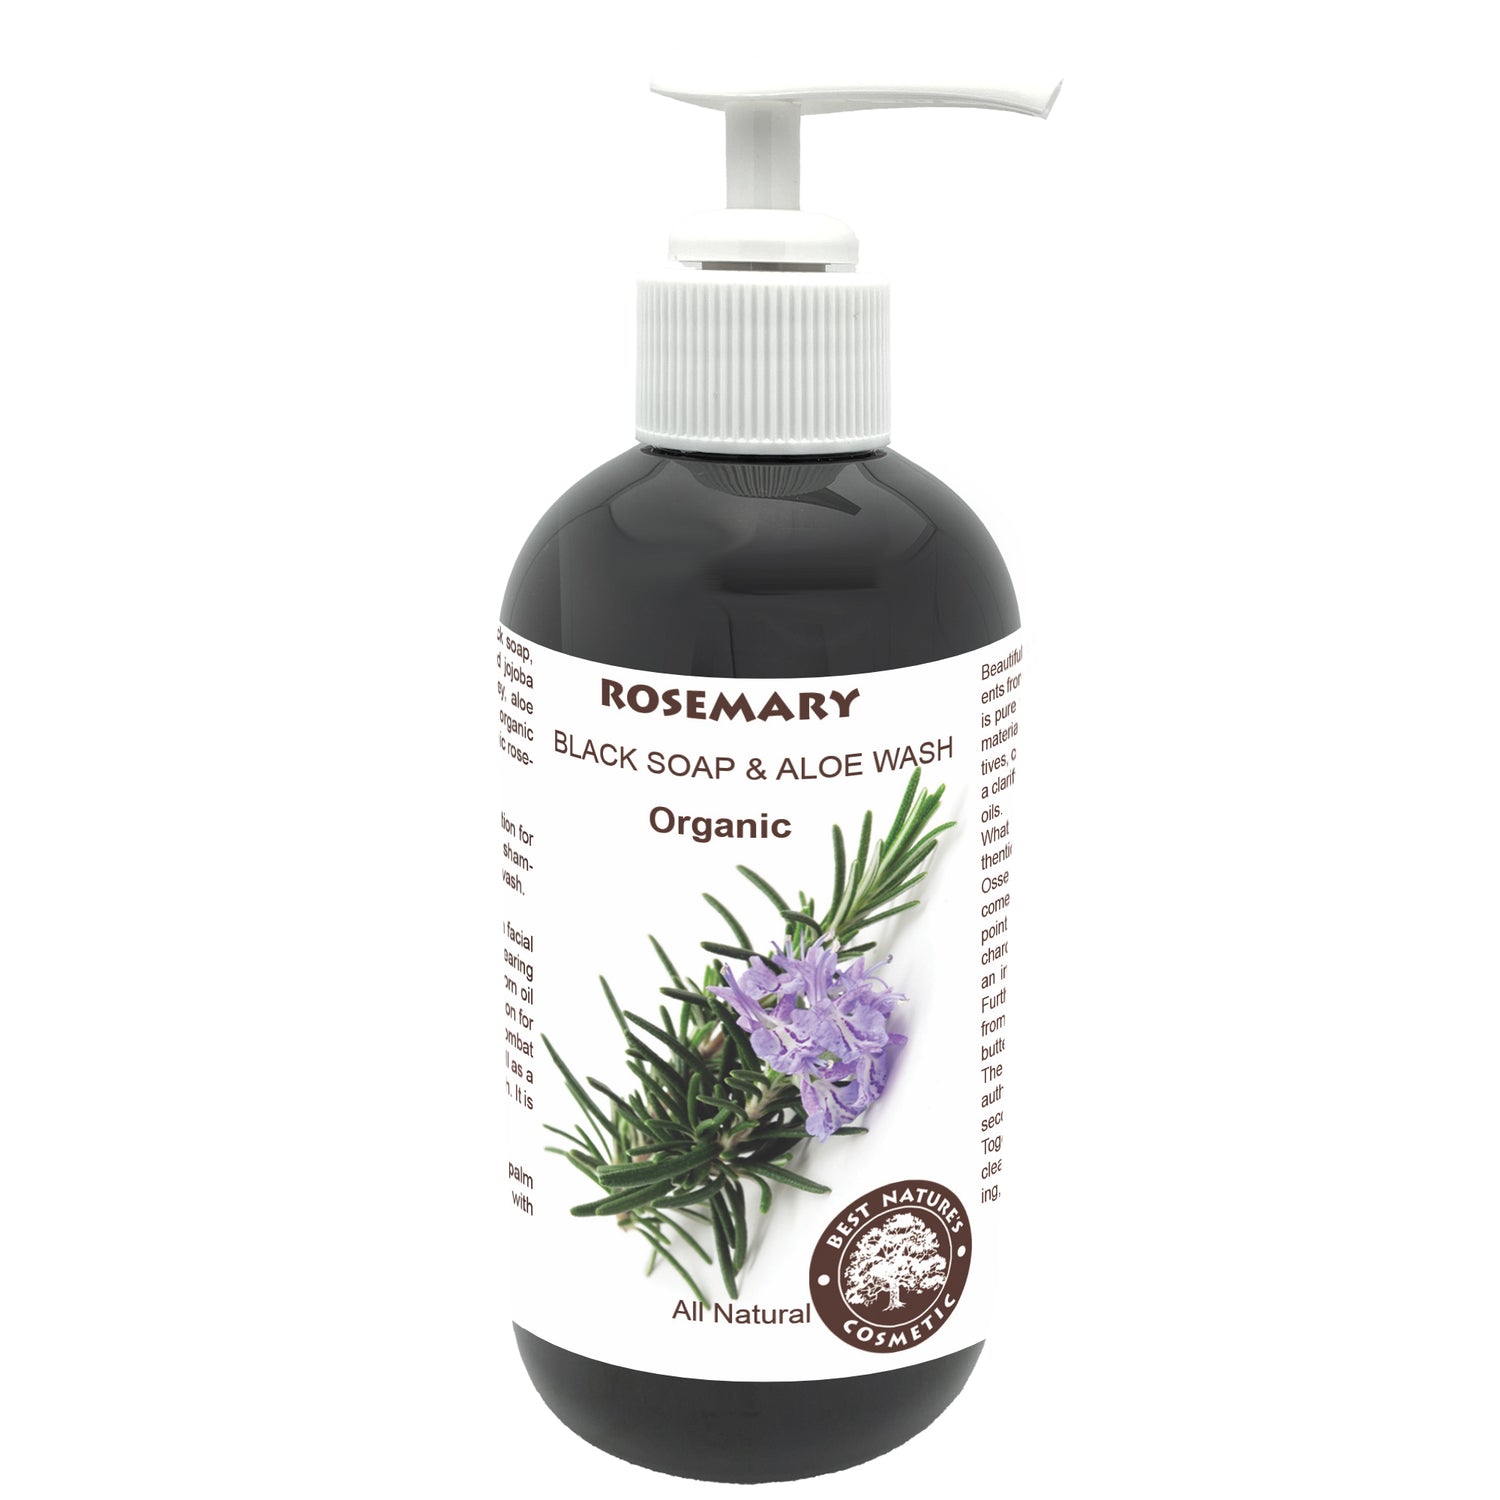 Rosemary Black Soap & Aloe Wash (Organic)